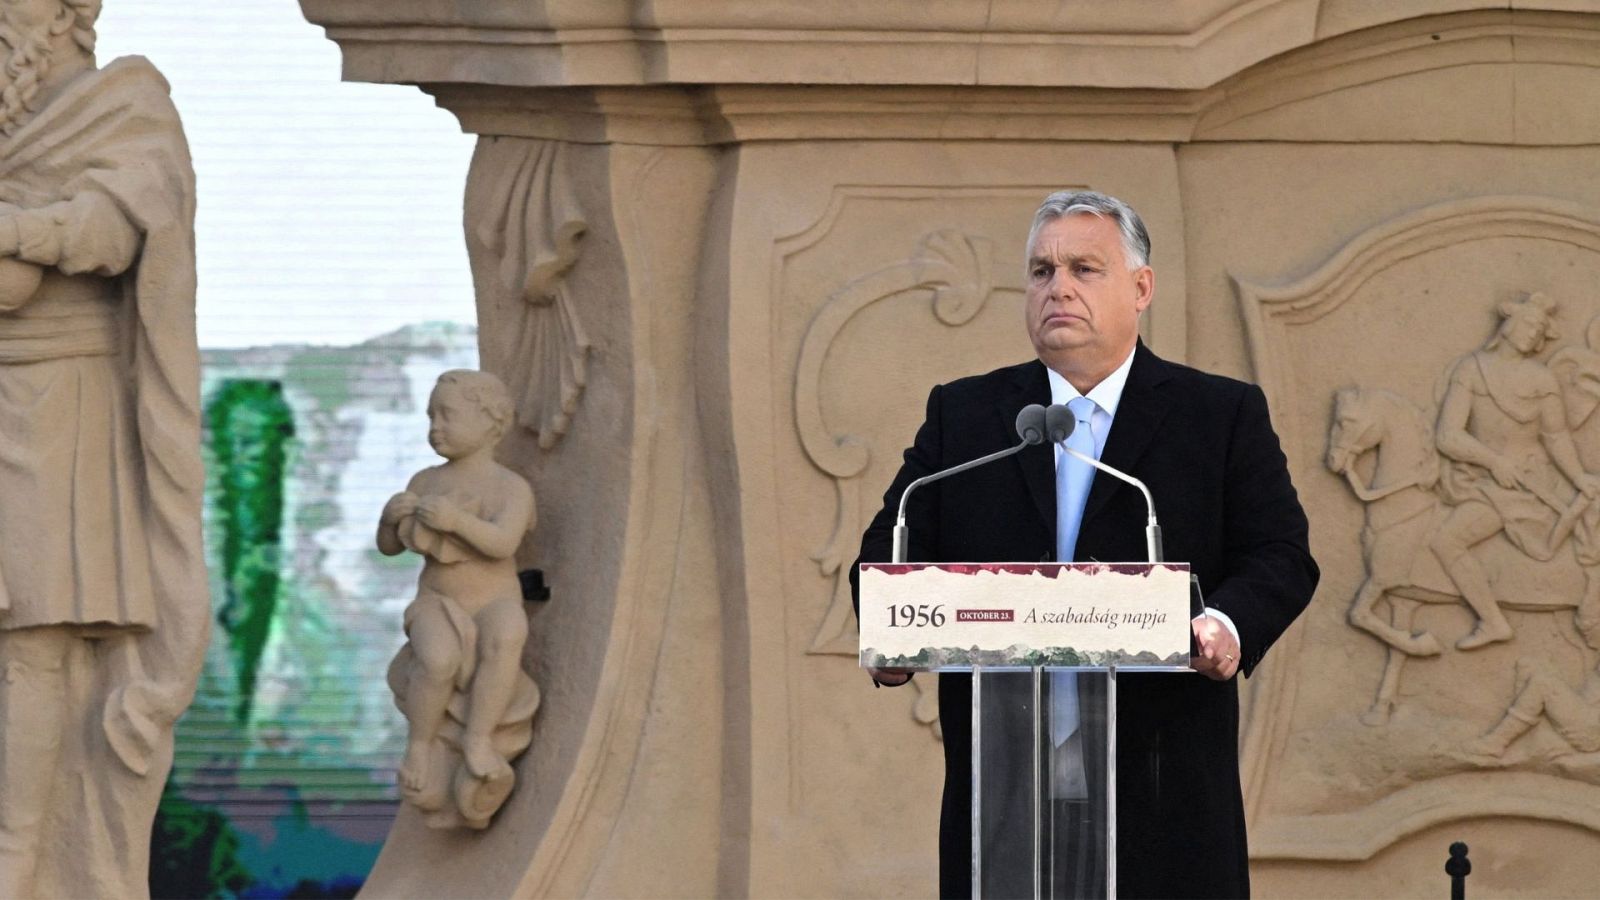 Cinco Continentes - El duelo Unión Europea-Viktor Orbán - Escuchar ahora